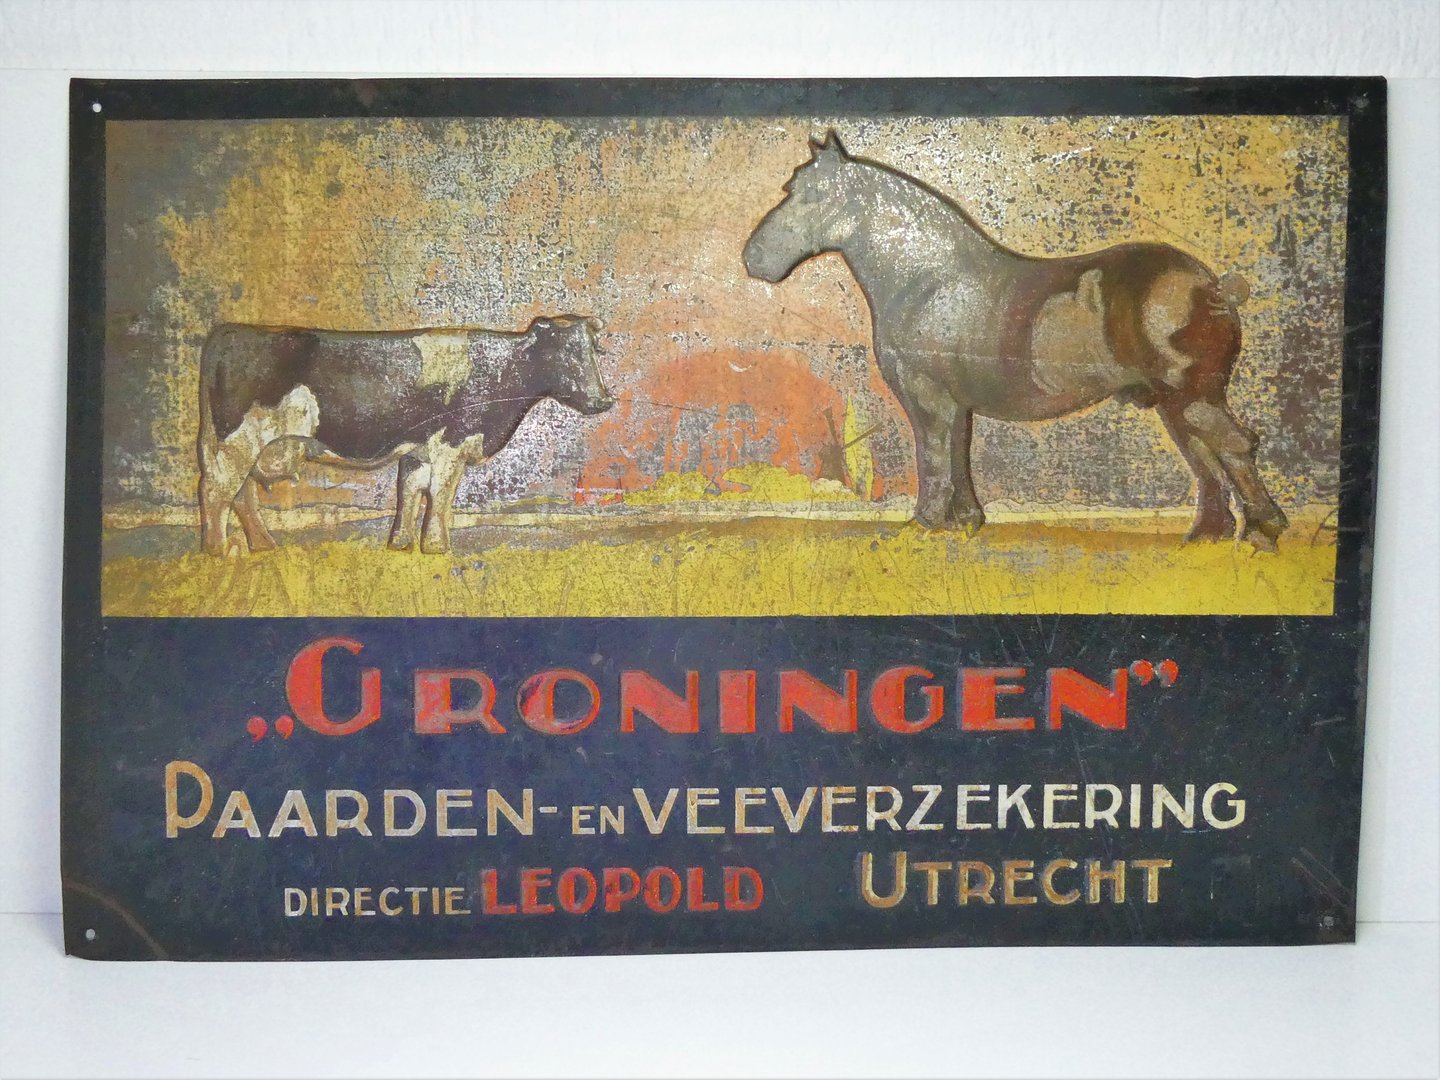 Antiek # 1910 Metalen Reclamebord "GRONINGEN" Paarden en Veeverzekering